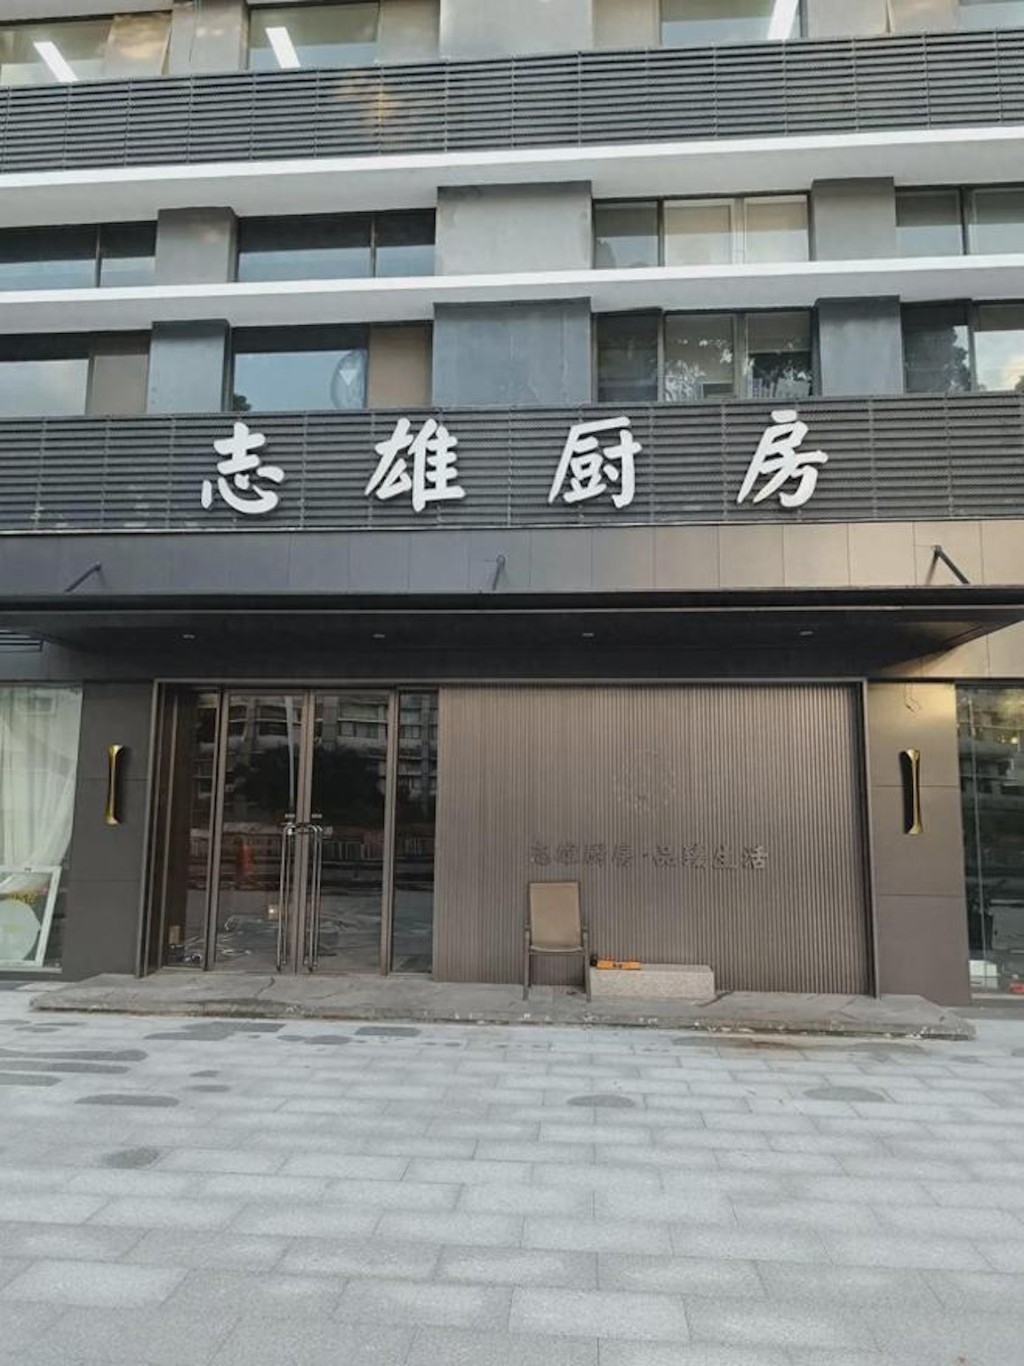 不过近日有网民晒出多张照片，指其深圳市南山区蛇口分店已结业。